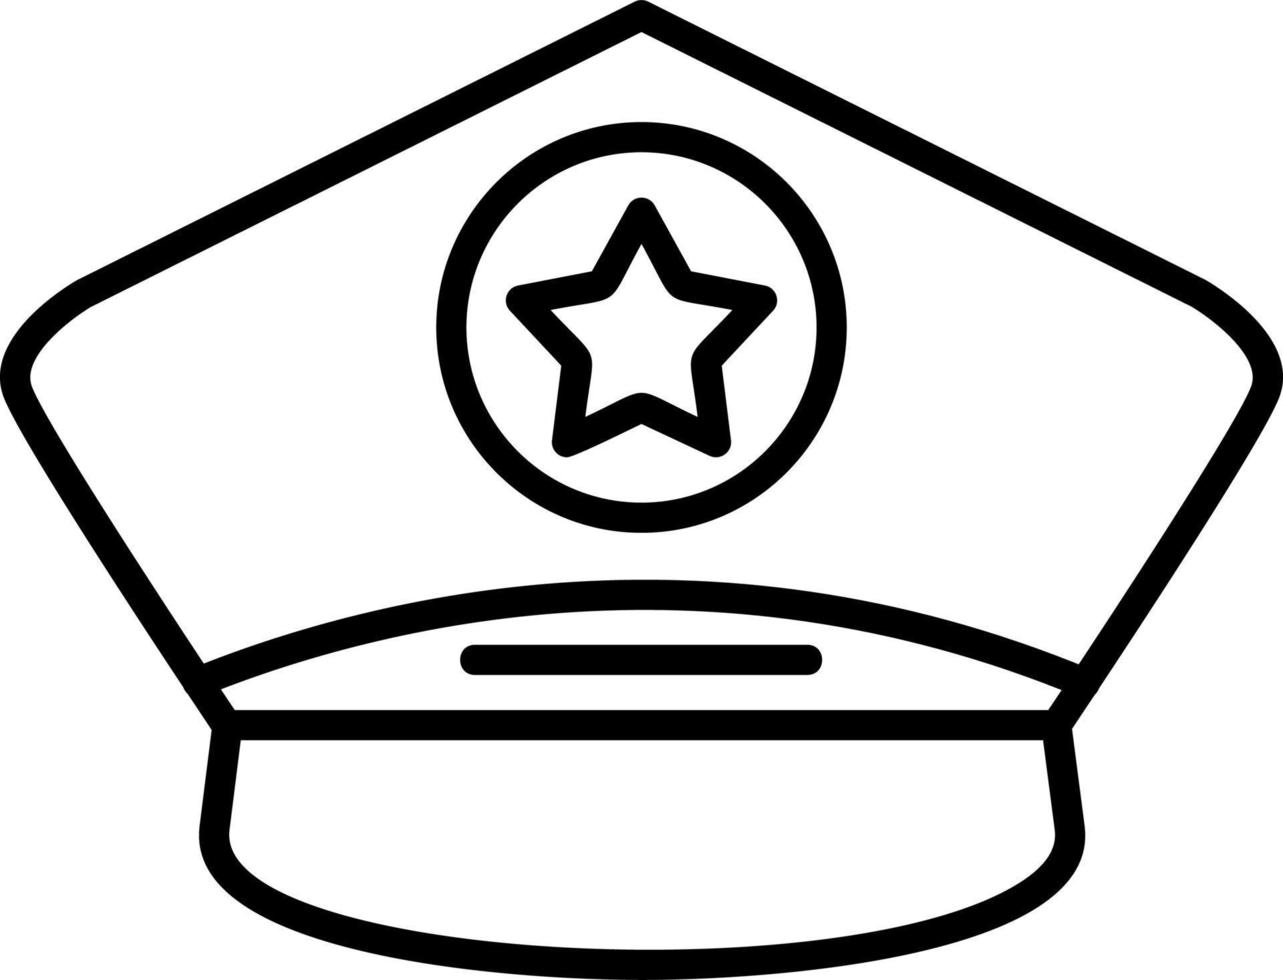 Police Cap Vector Icon